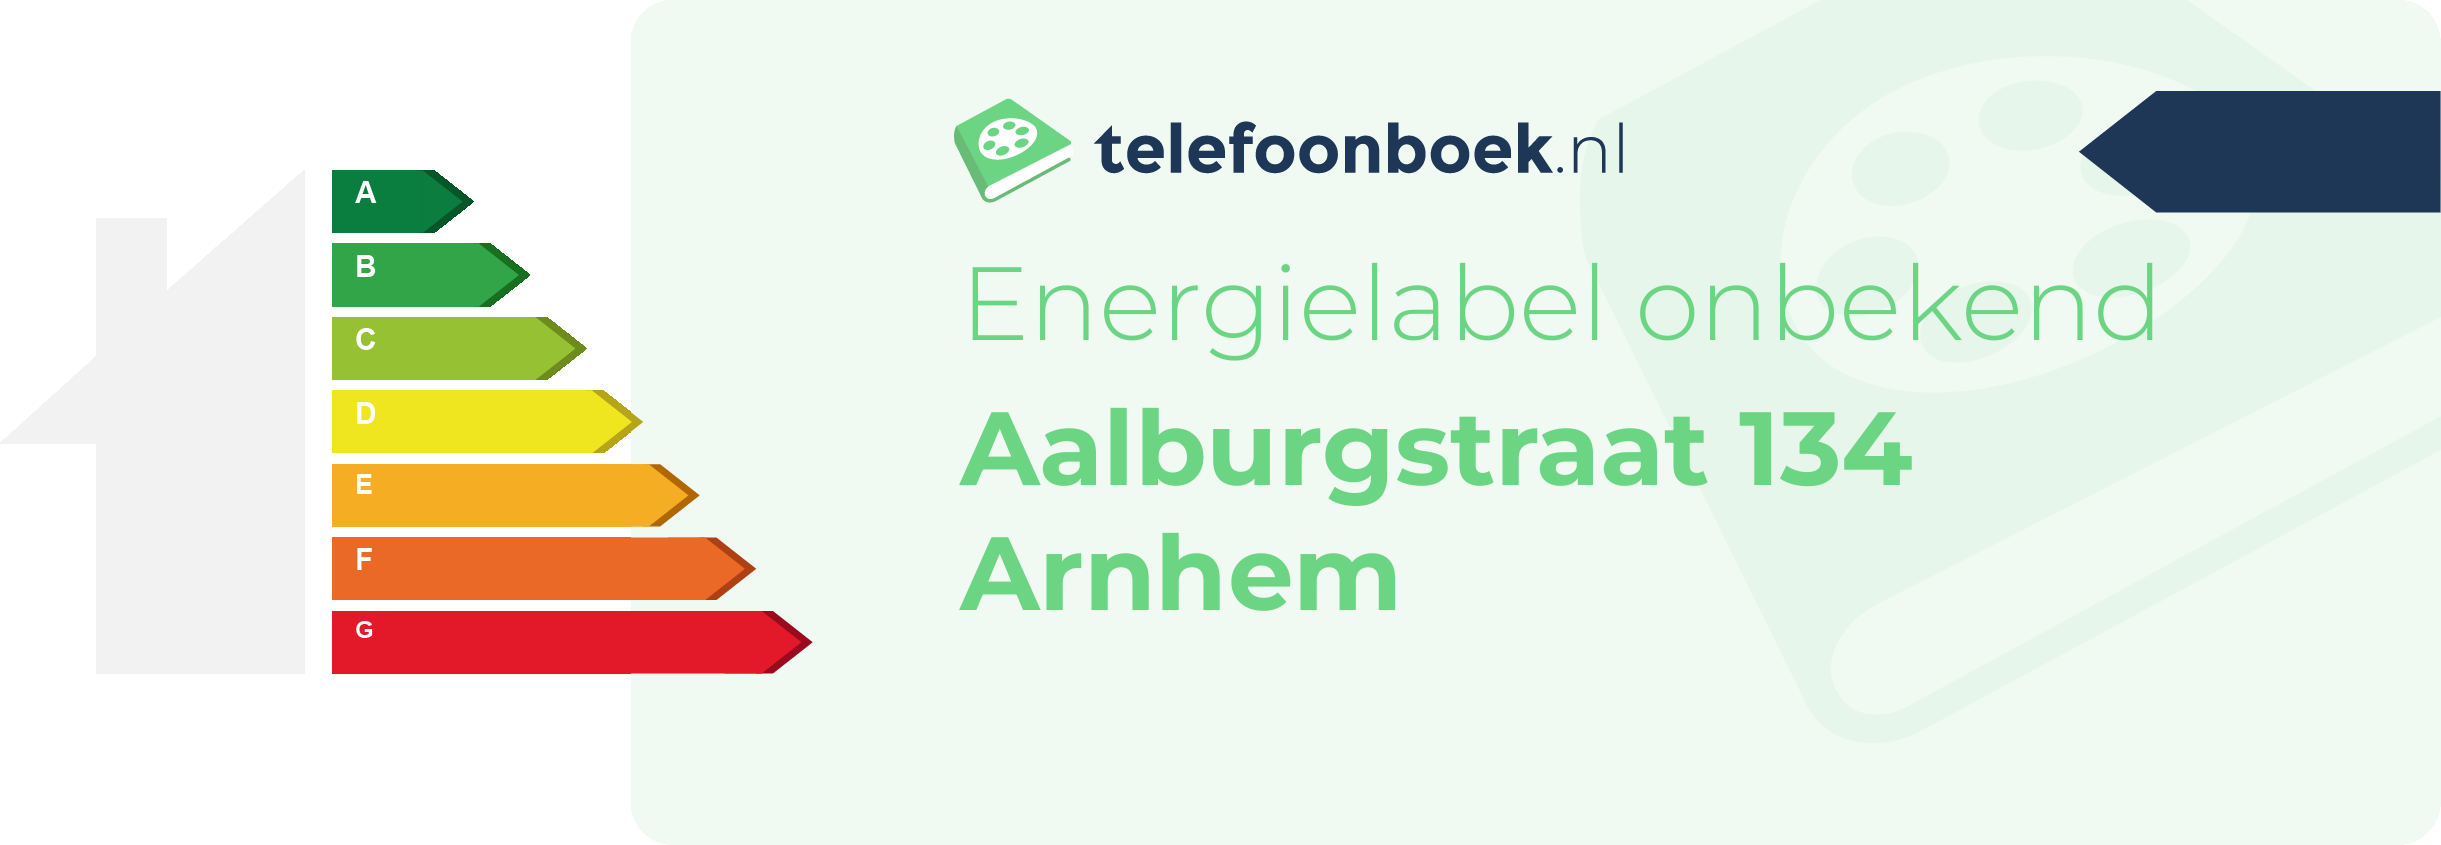 Energielabel Aalburgstraat 134 Arnhem